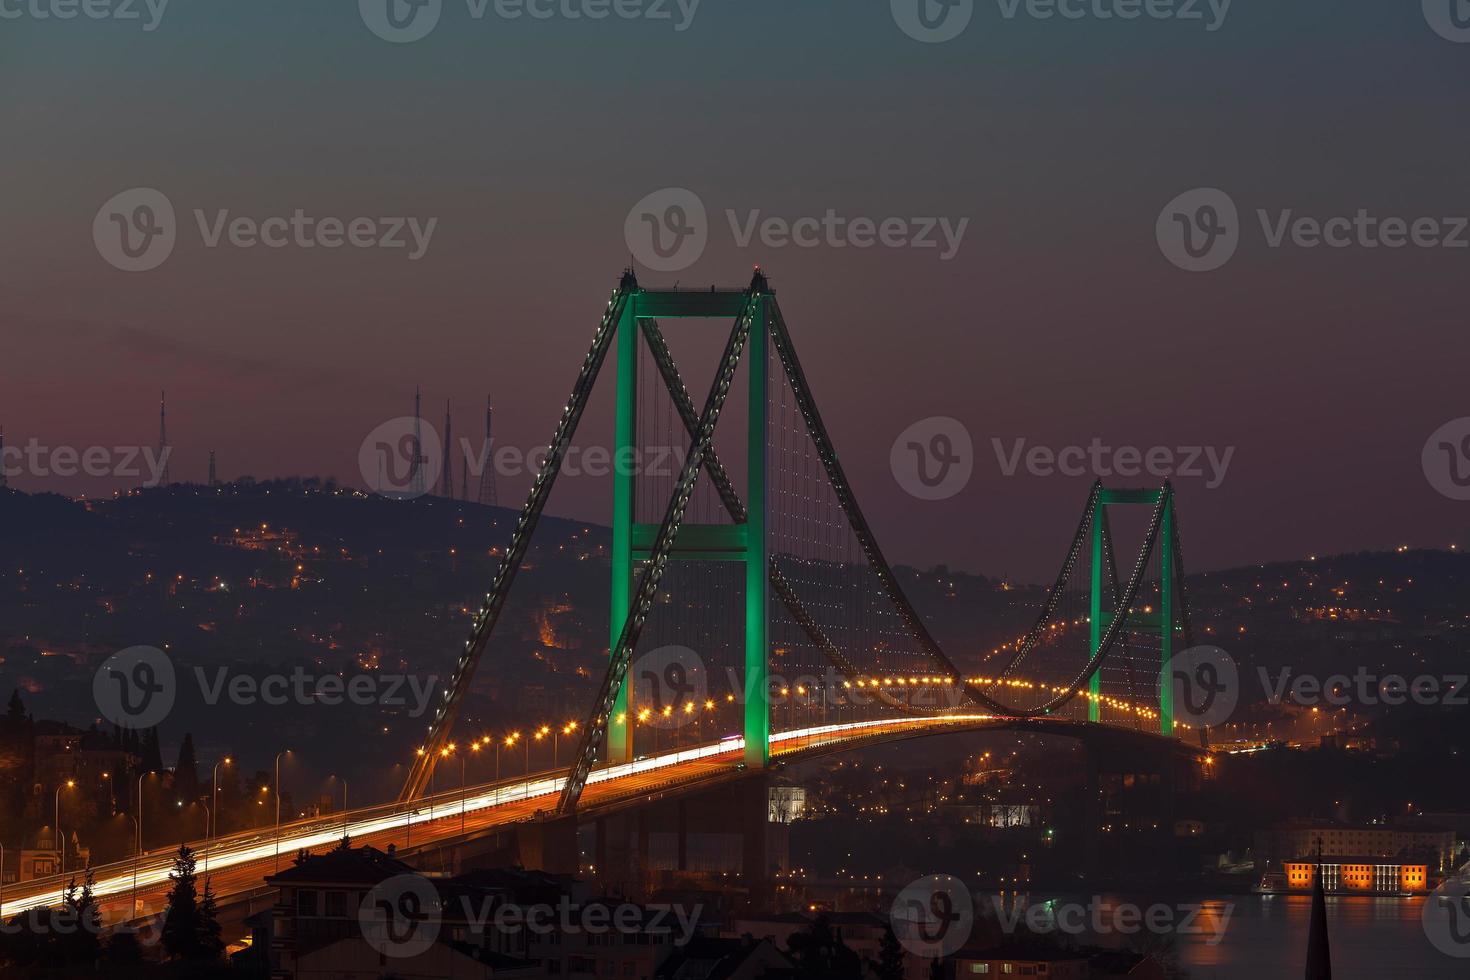 Puente del Bósforo y el tráfico de la mañana foto